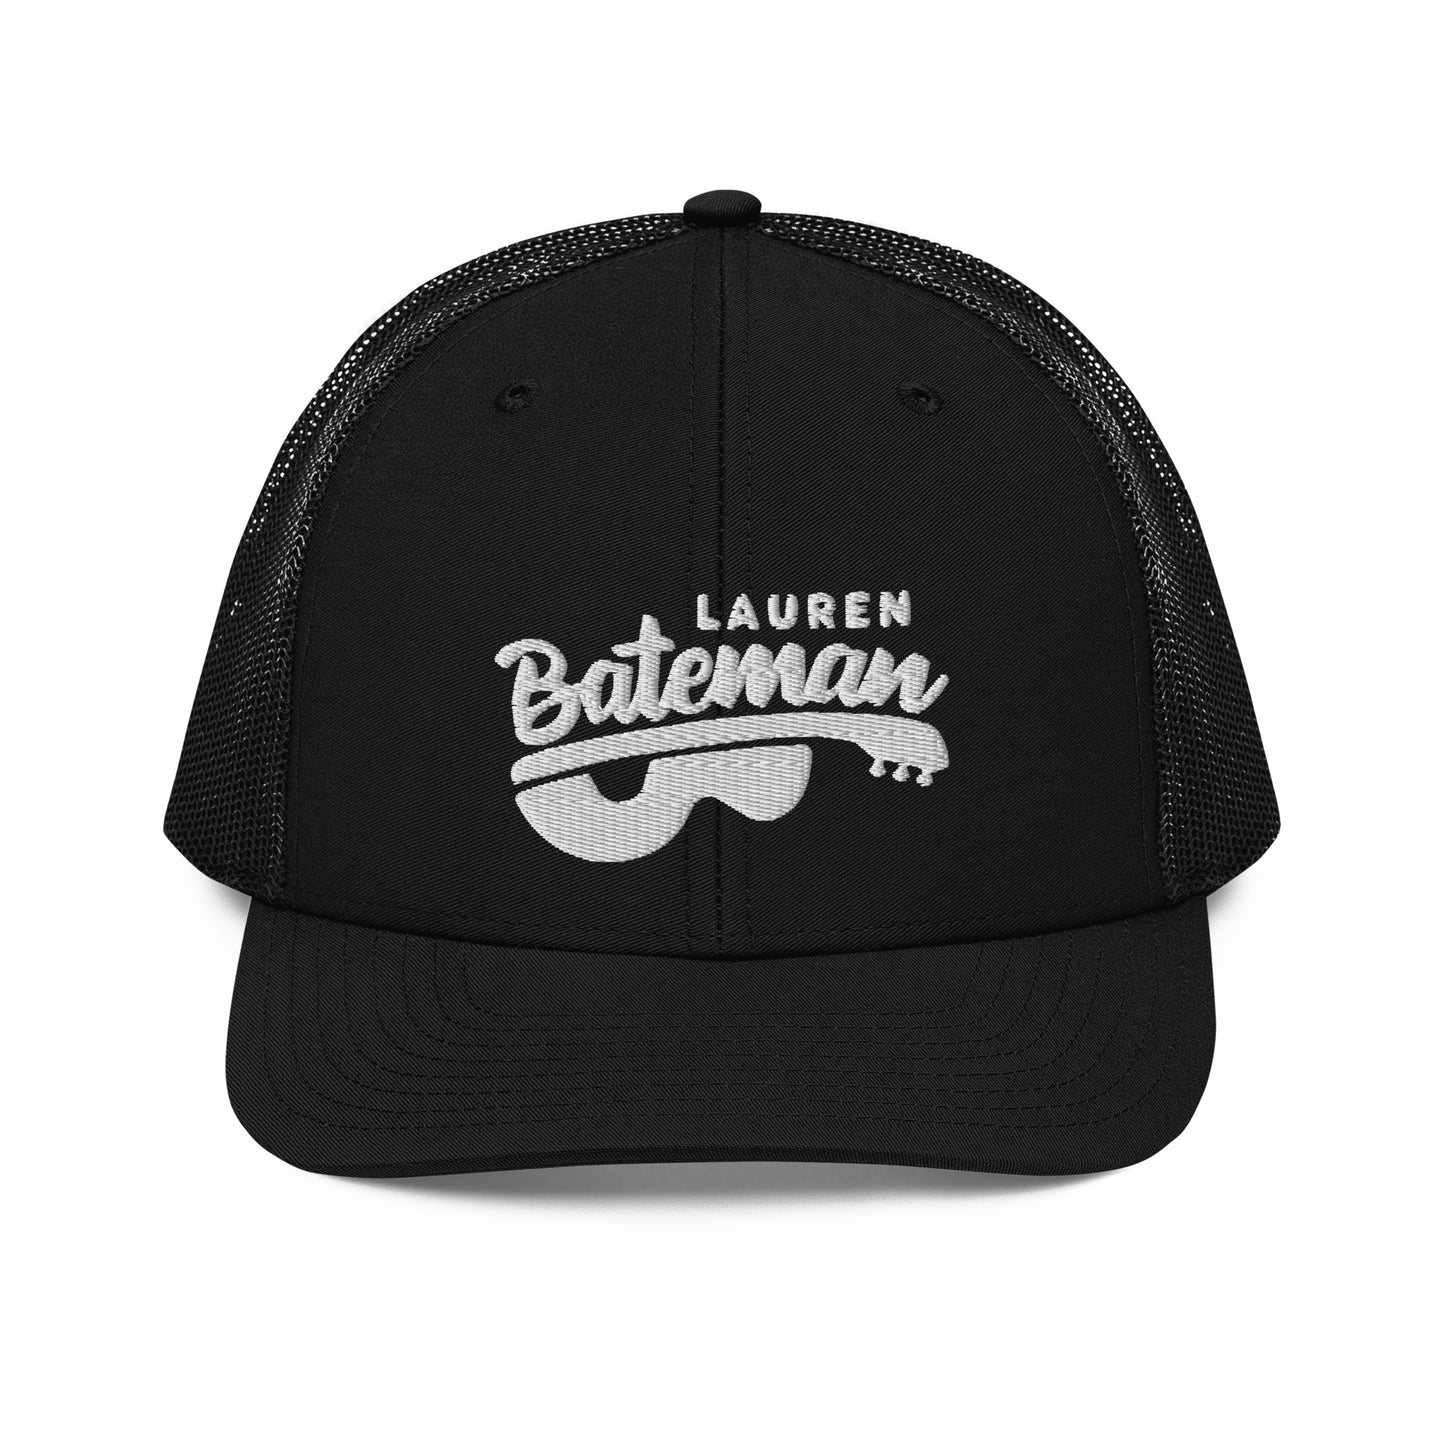 Lauren Bateman Trucker Cap